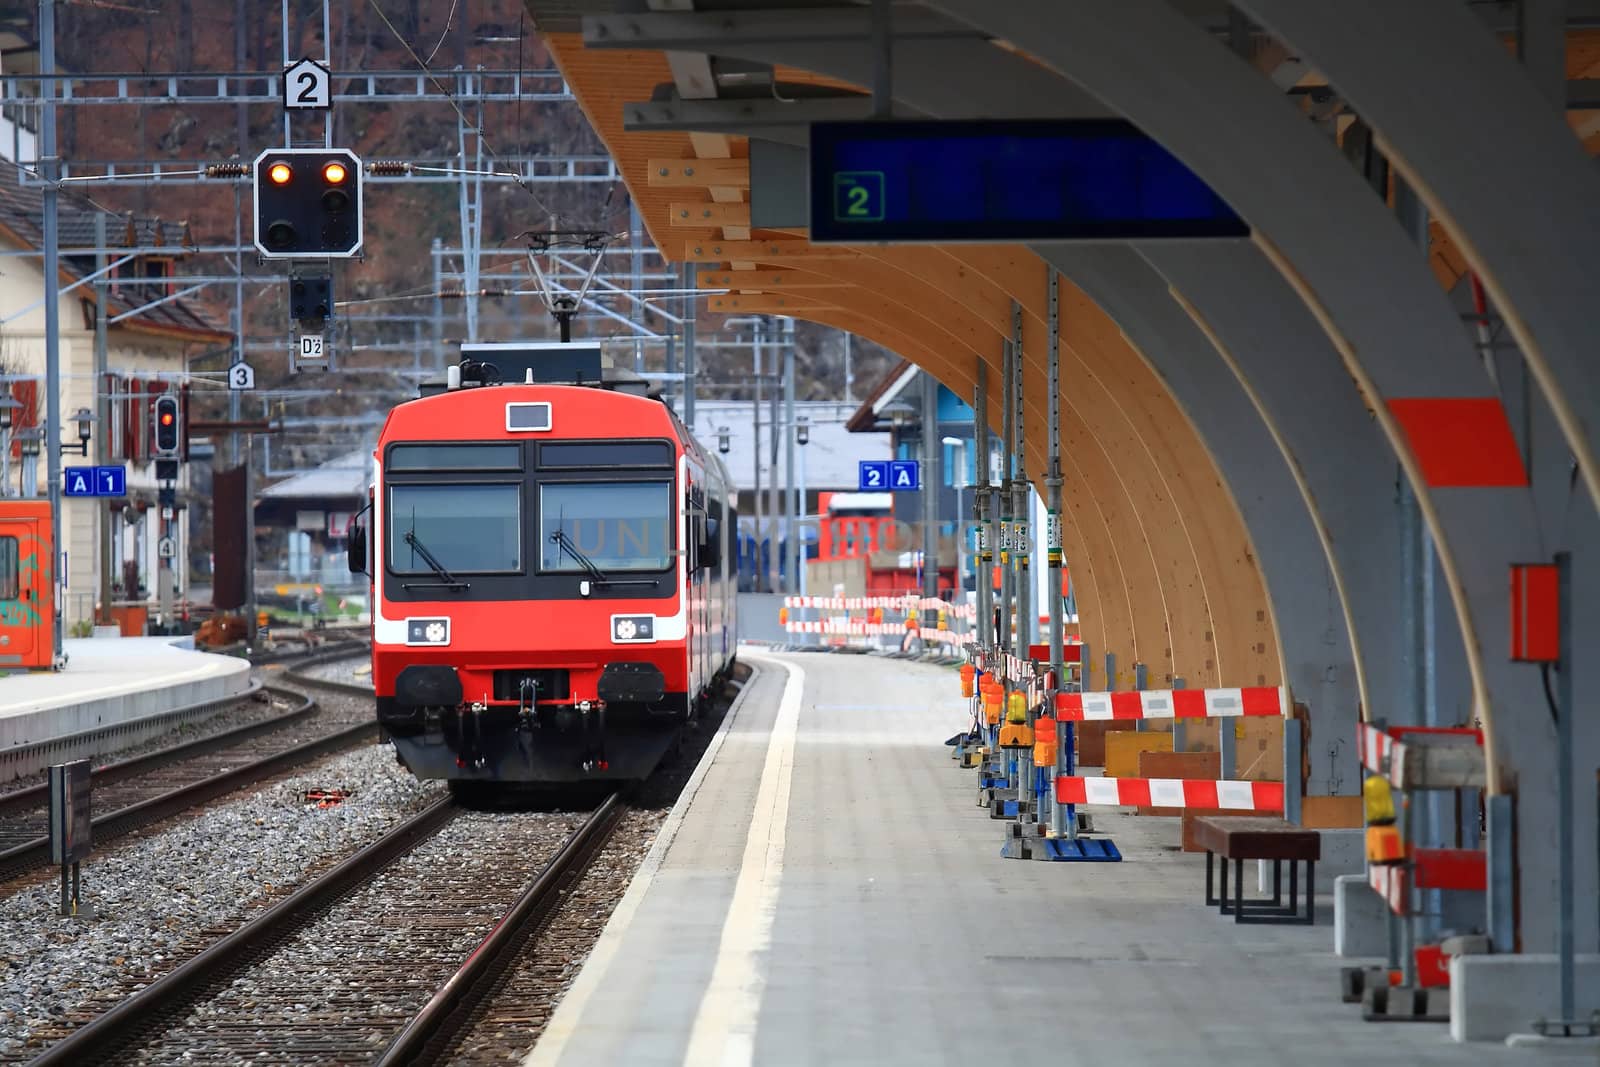 Red Train in Interlaken Station, Switzerland by vichie81